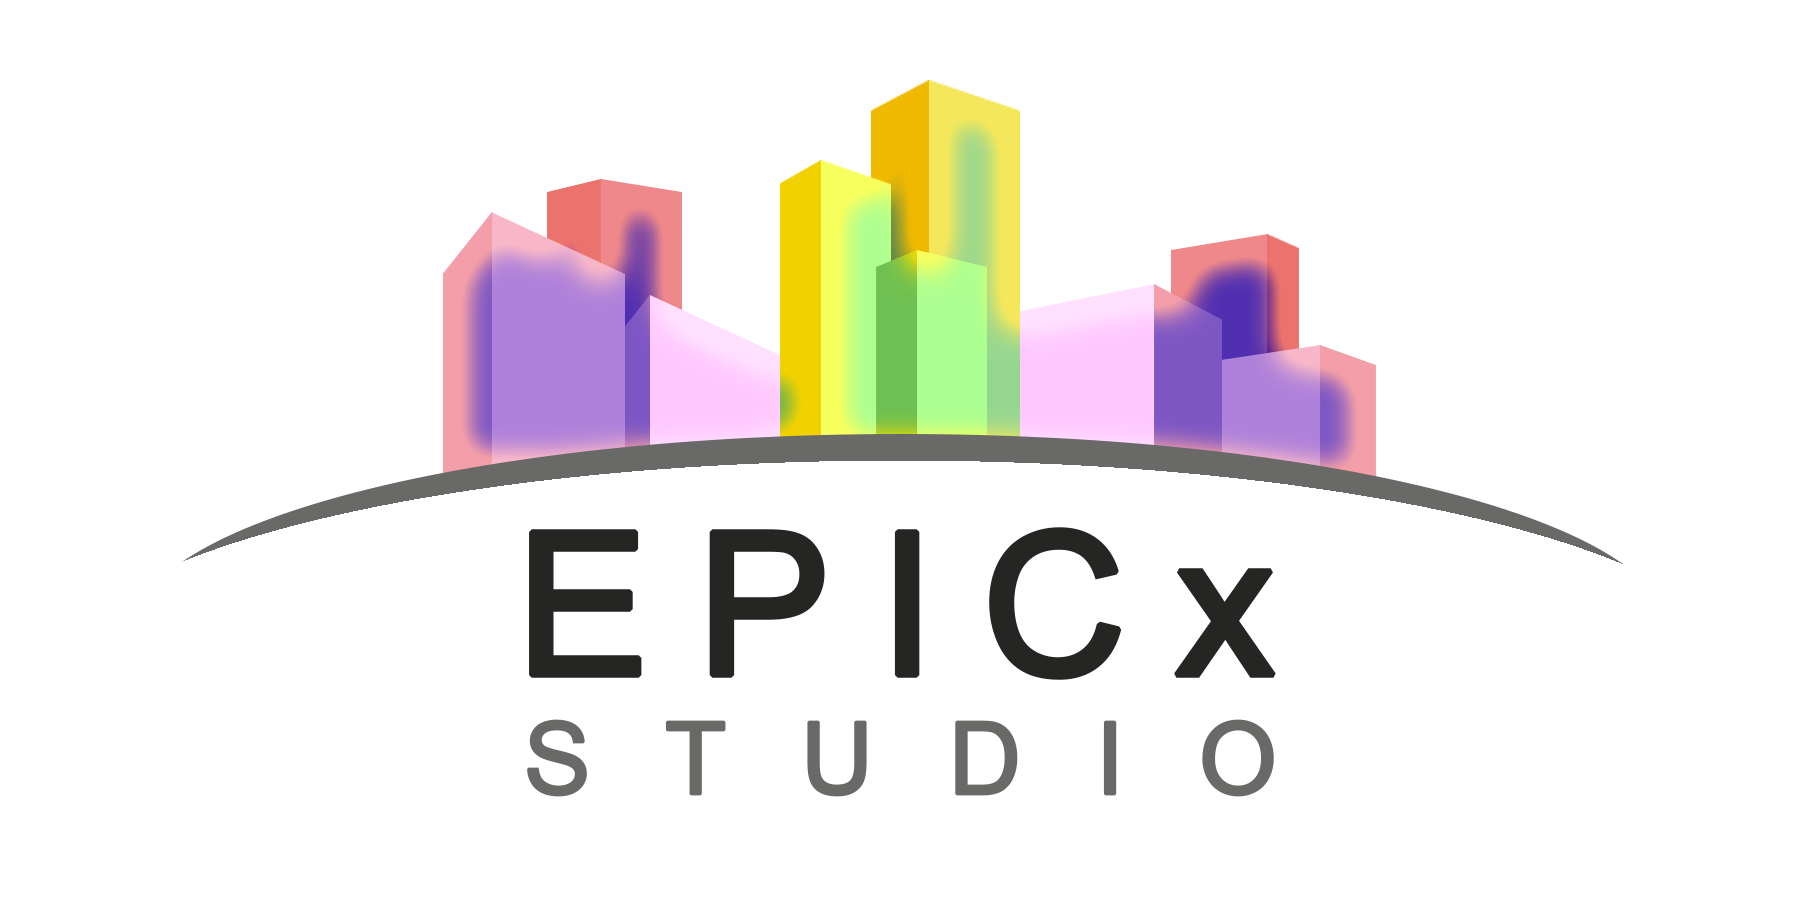 EPICx Studio